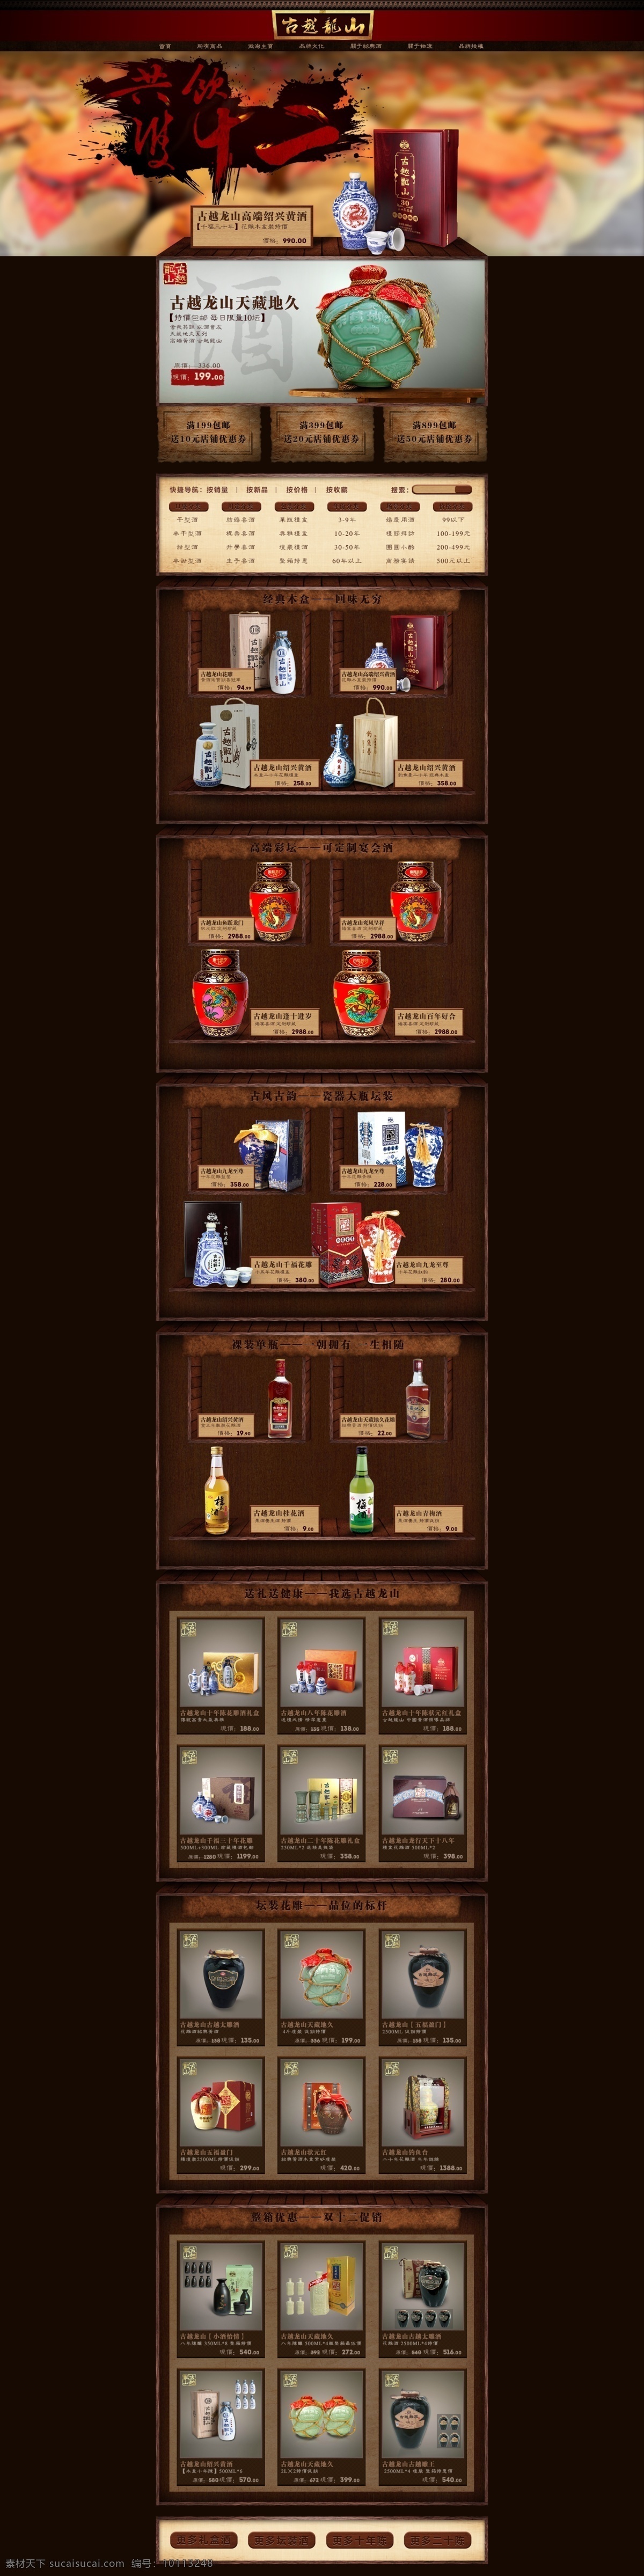 古越龙山 老酒 网页 2016 绍兴特产 wui 食品 保健 web 界面设计 中文模板